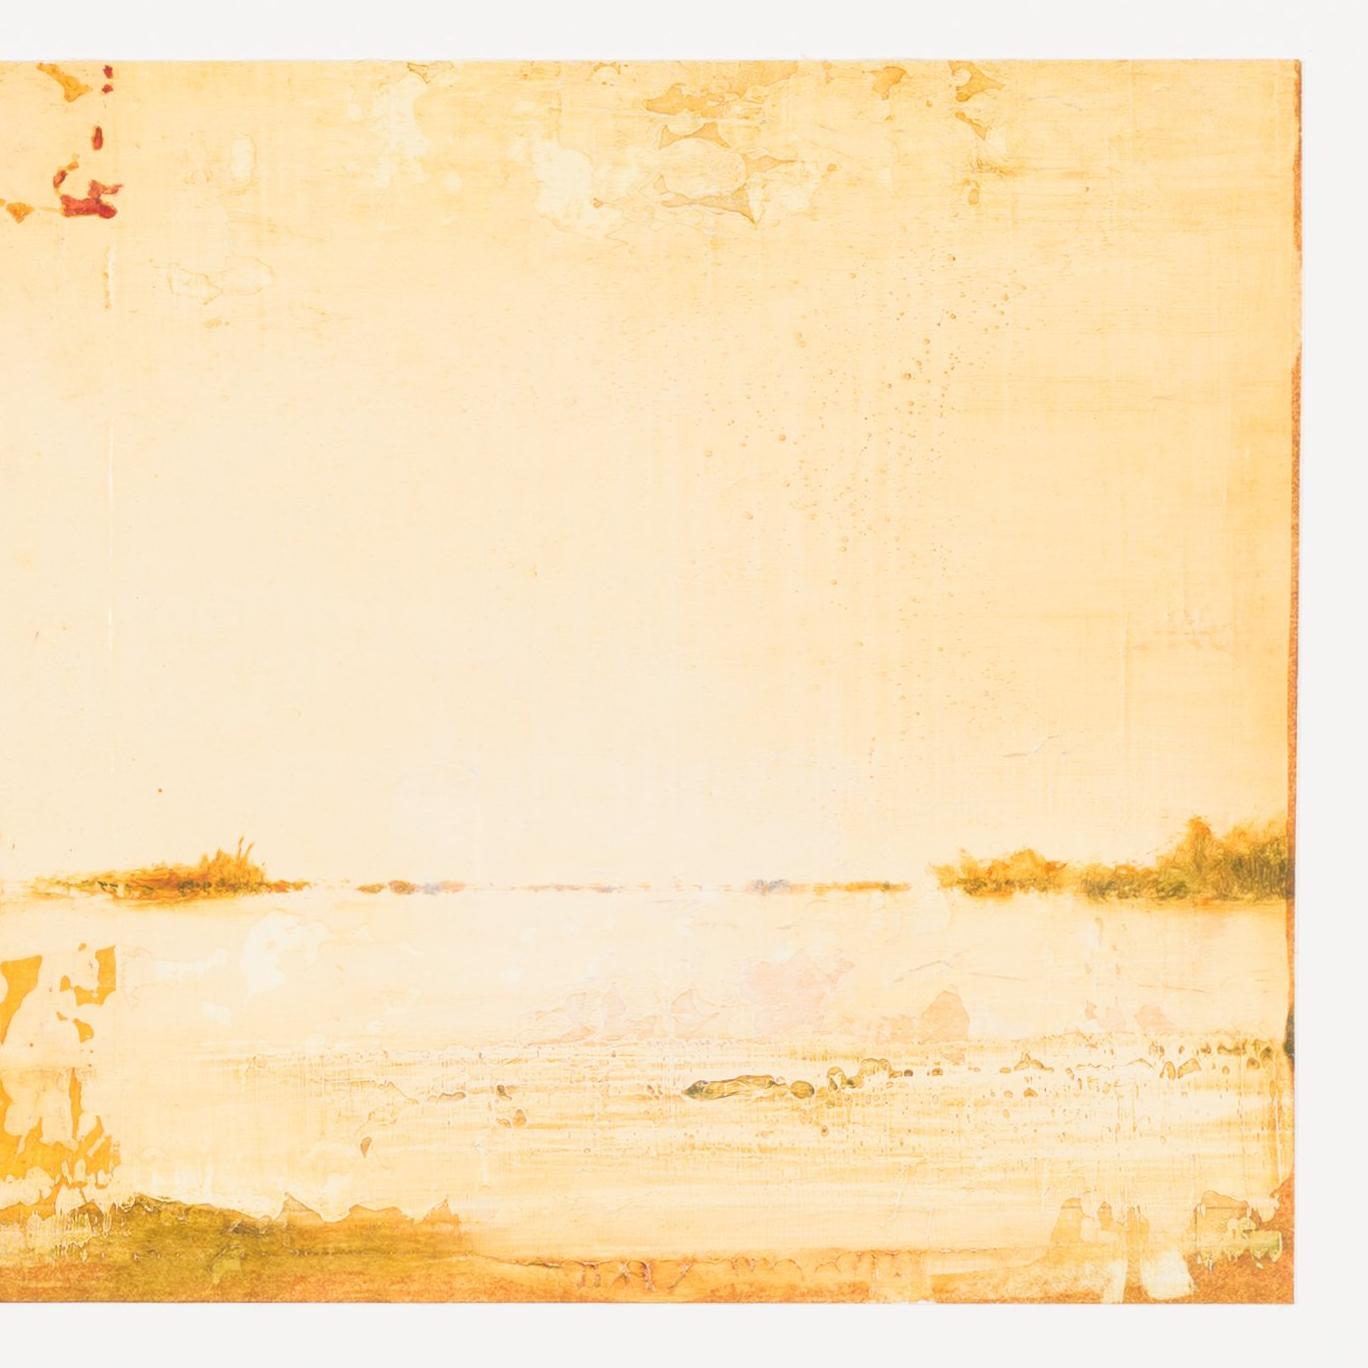 WOP 2 - 00643 - Gray Landscape Painting by Hiro Yokose